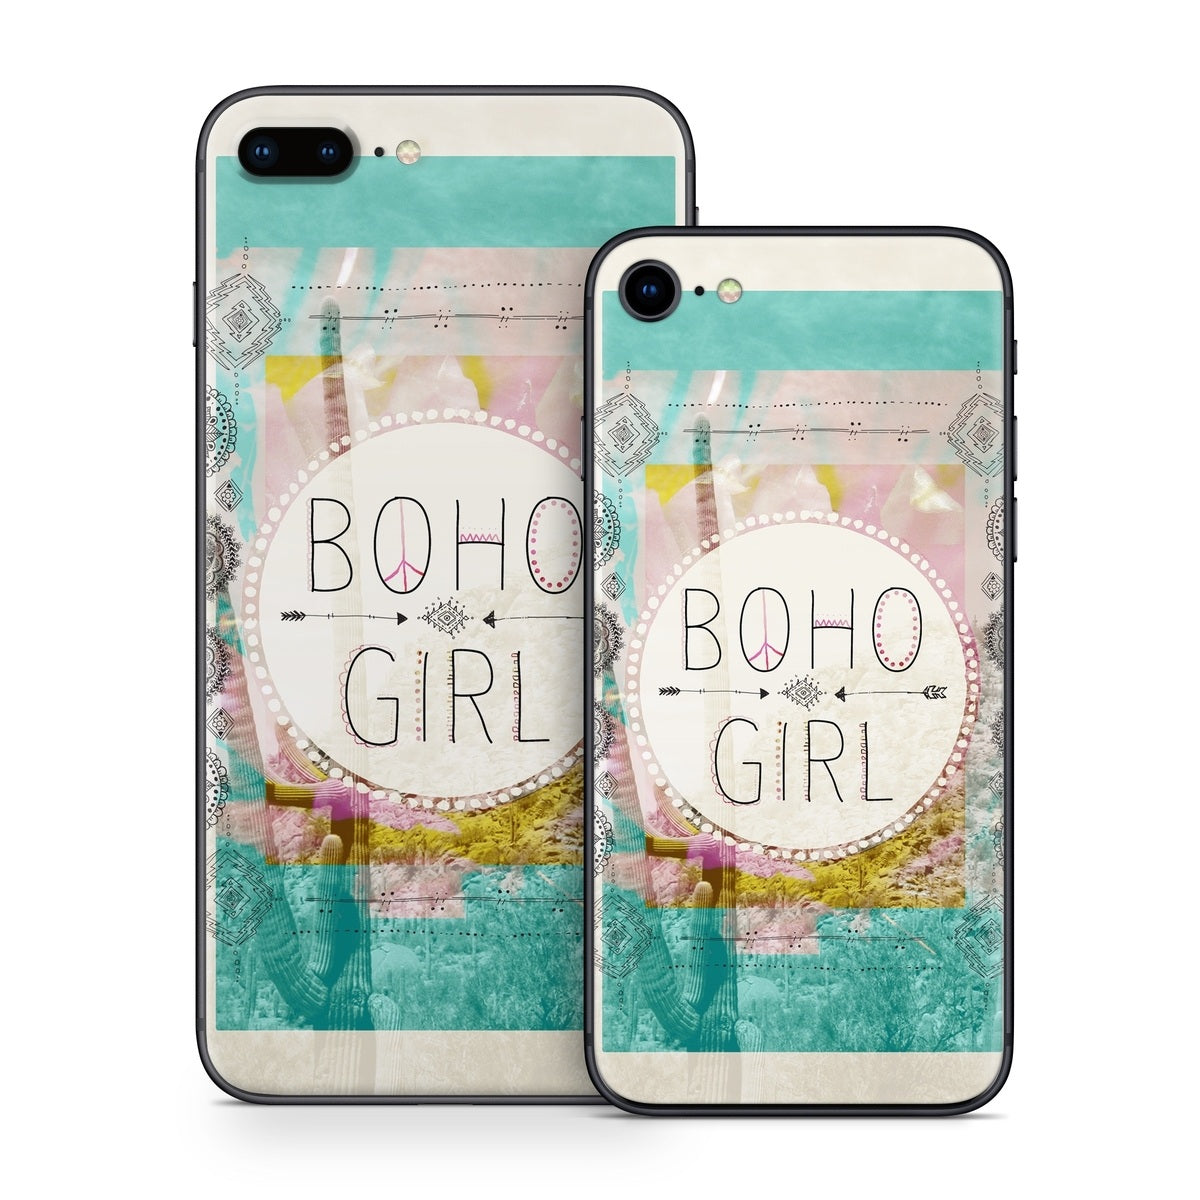 Boho Girl - Apple iPhone 8 Skin